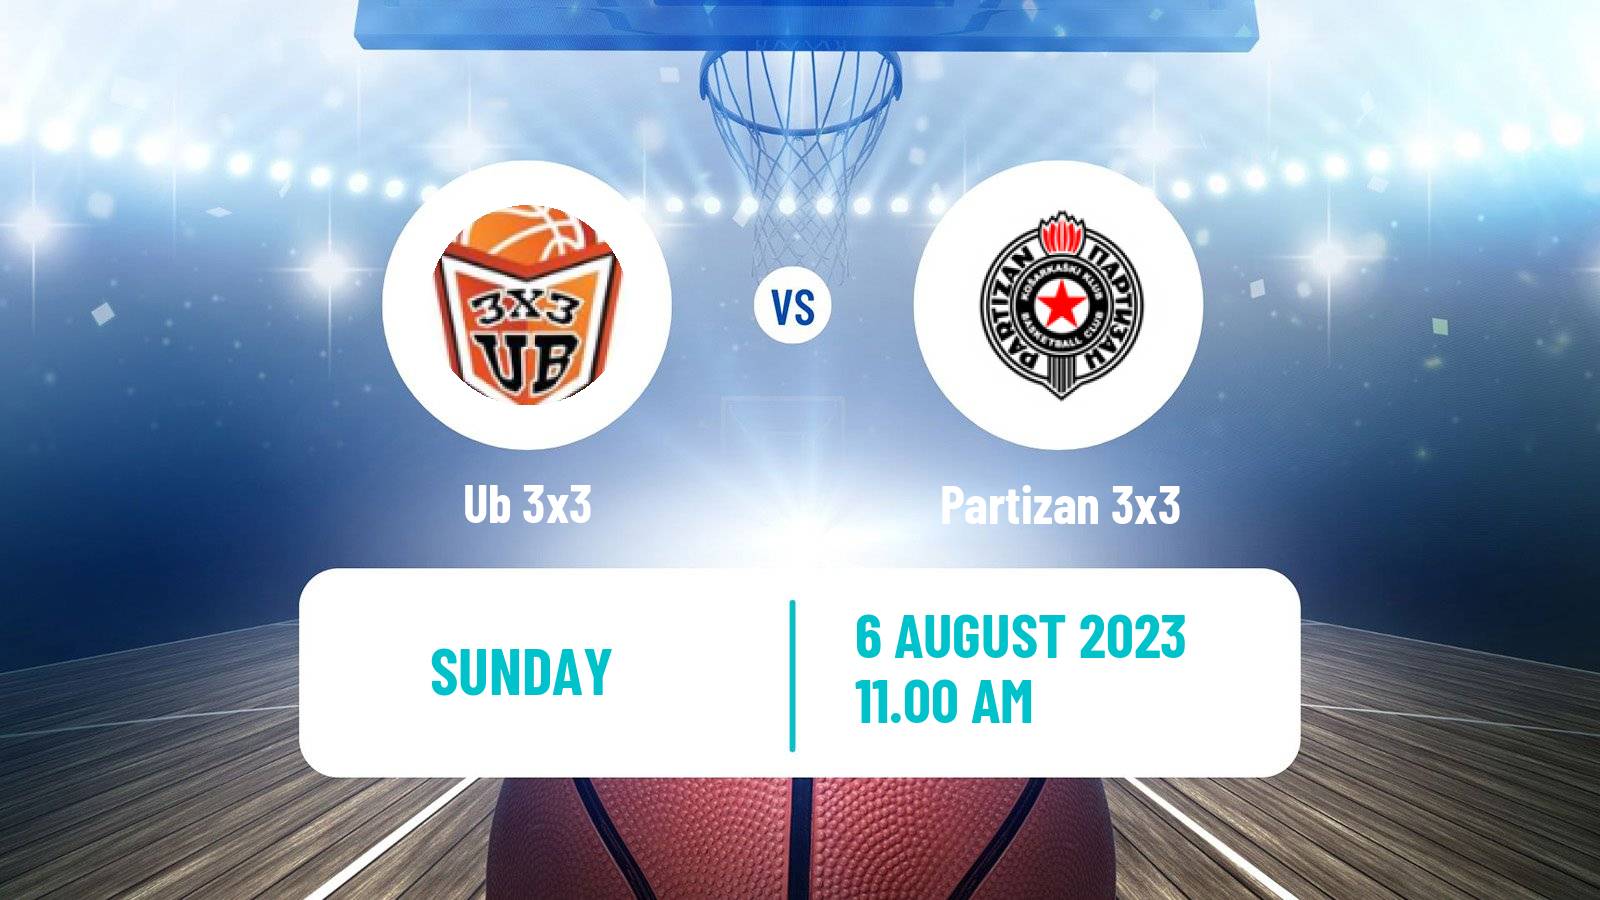 Basketball World Tour Prague 3x3 Ub 3x3 - Partizan 3x3